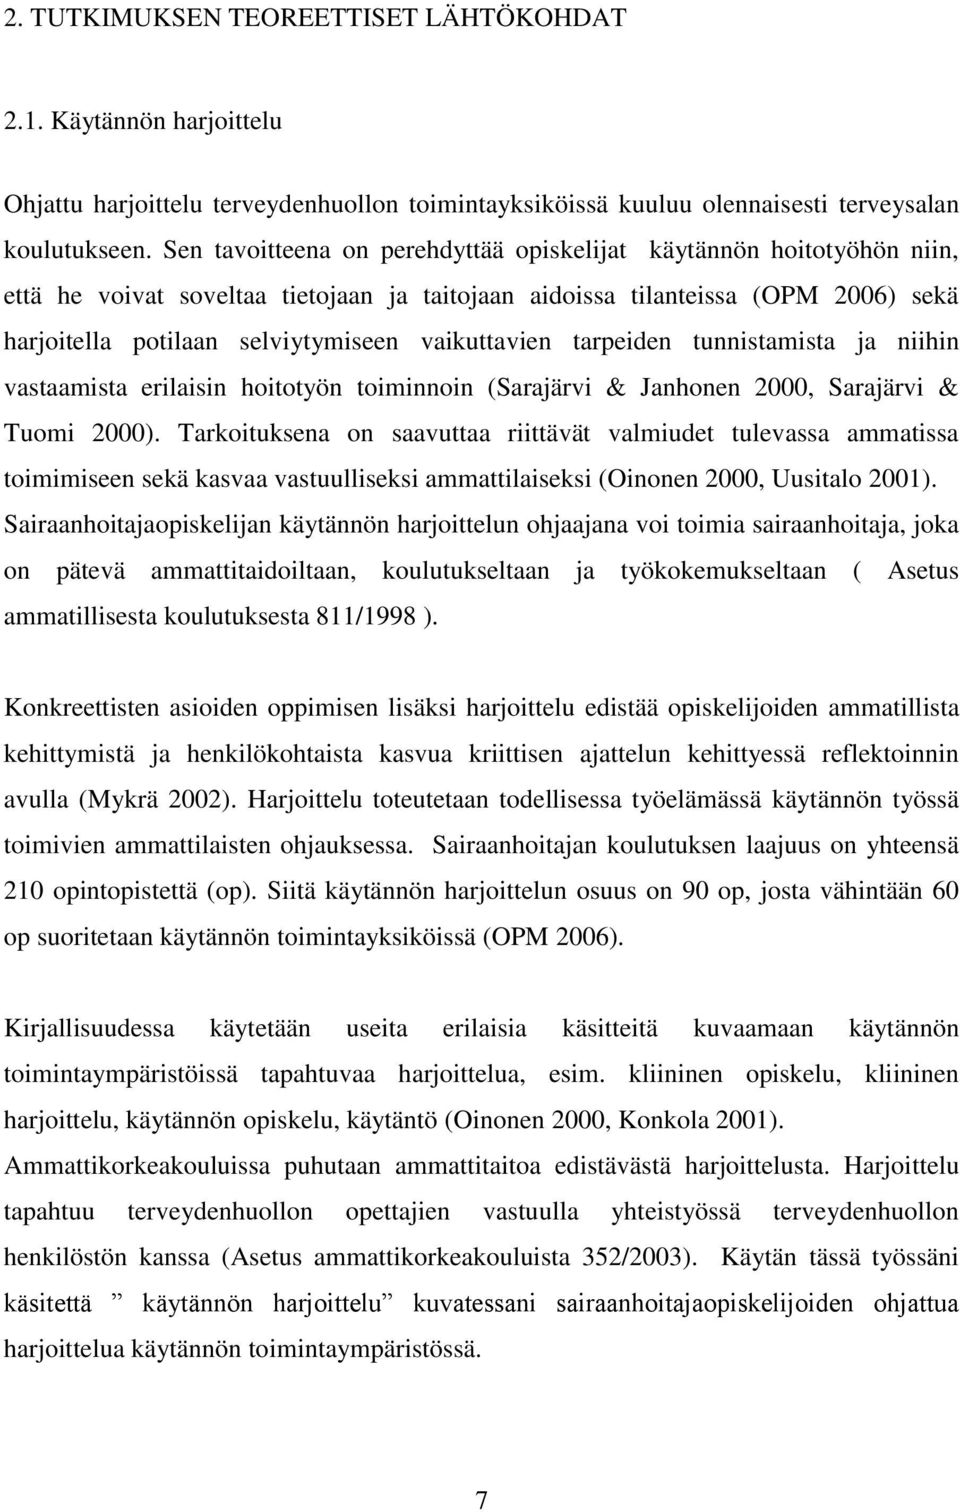 vaikuttavien tarpeiden tunnistamista ja niihin vastaamista erilaisin hoitotyön toiminnoin (Sarajärvi & Janhonen 2000, Sarajärvi & Tuomi 2000).